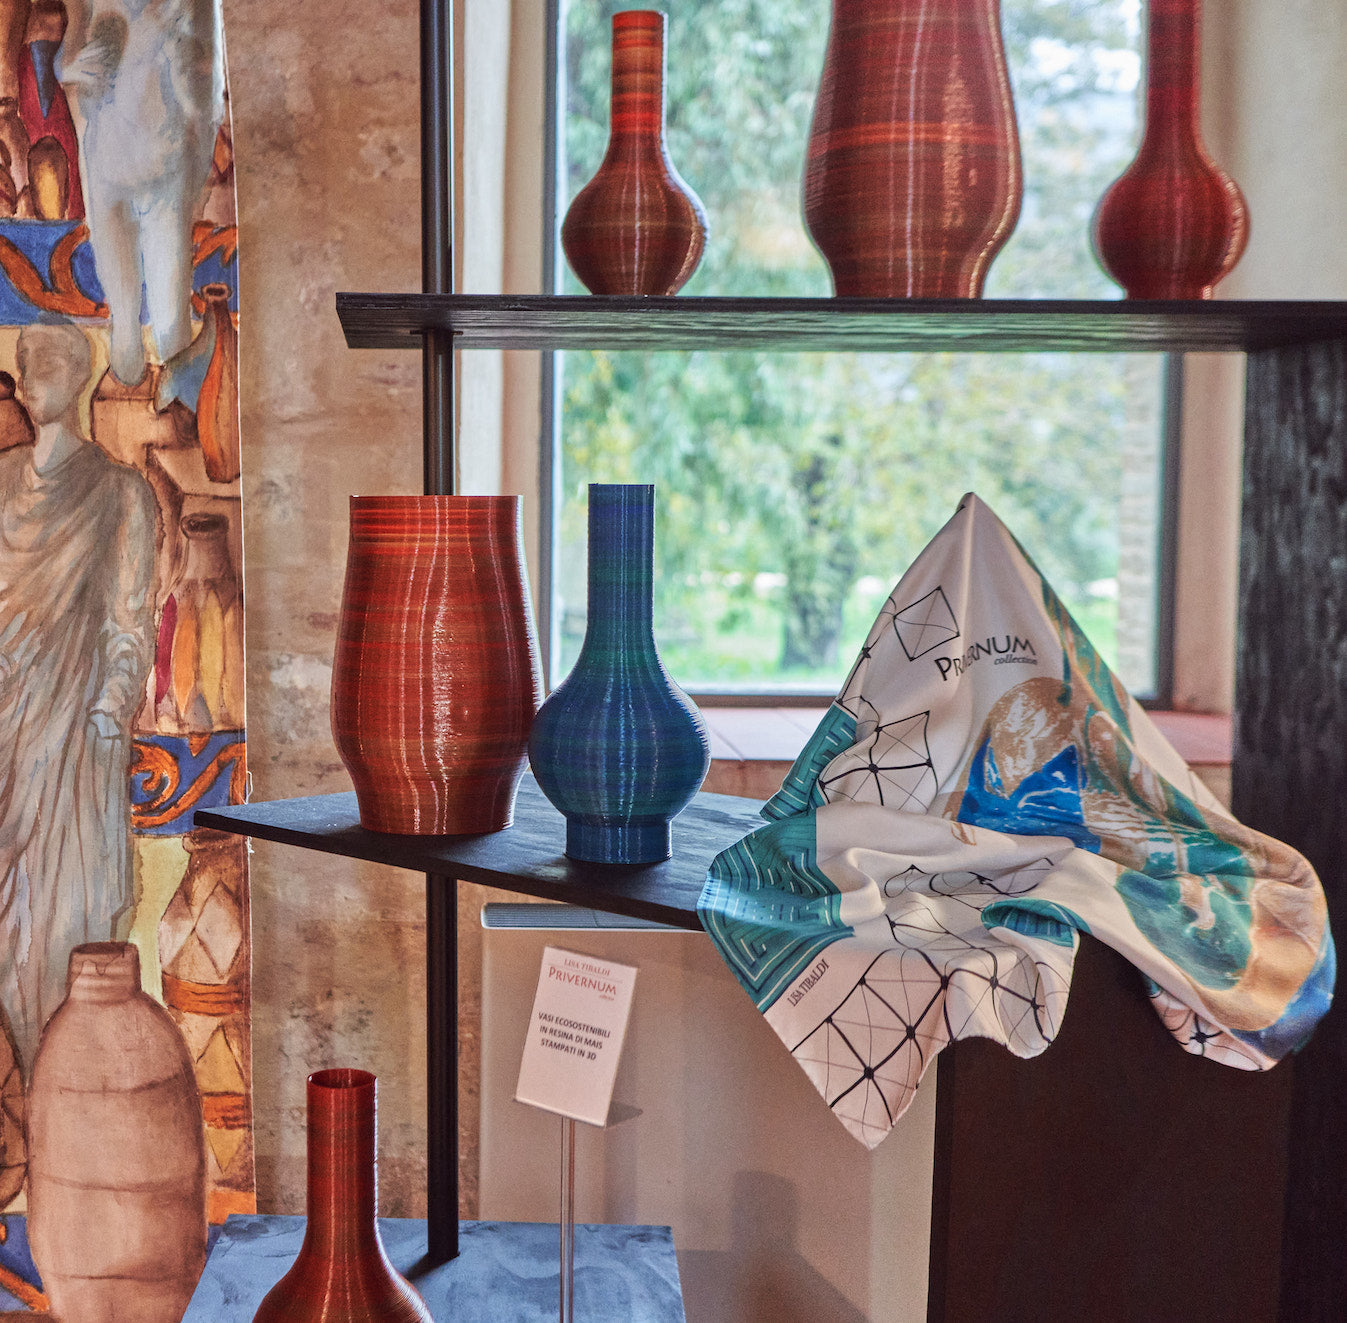 Lisa Tibaldi Privernum Collection Foulard in seta e Home design ecosostenibili ispirati al ricco patrimonio dei Musei Archeologici di Priverno